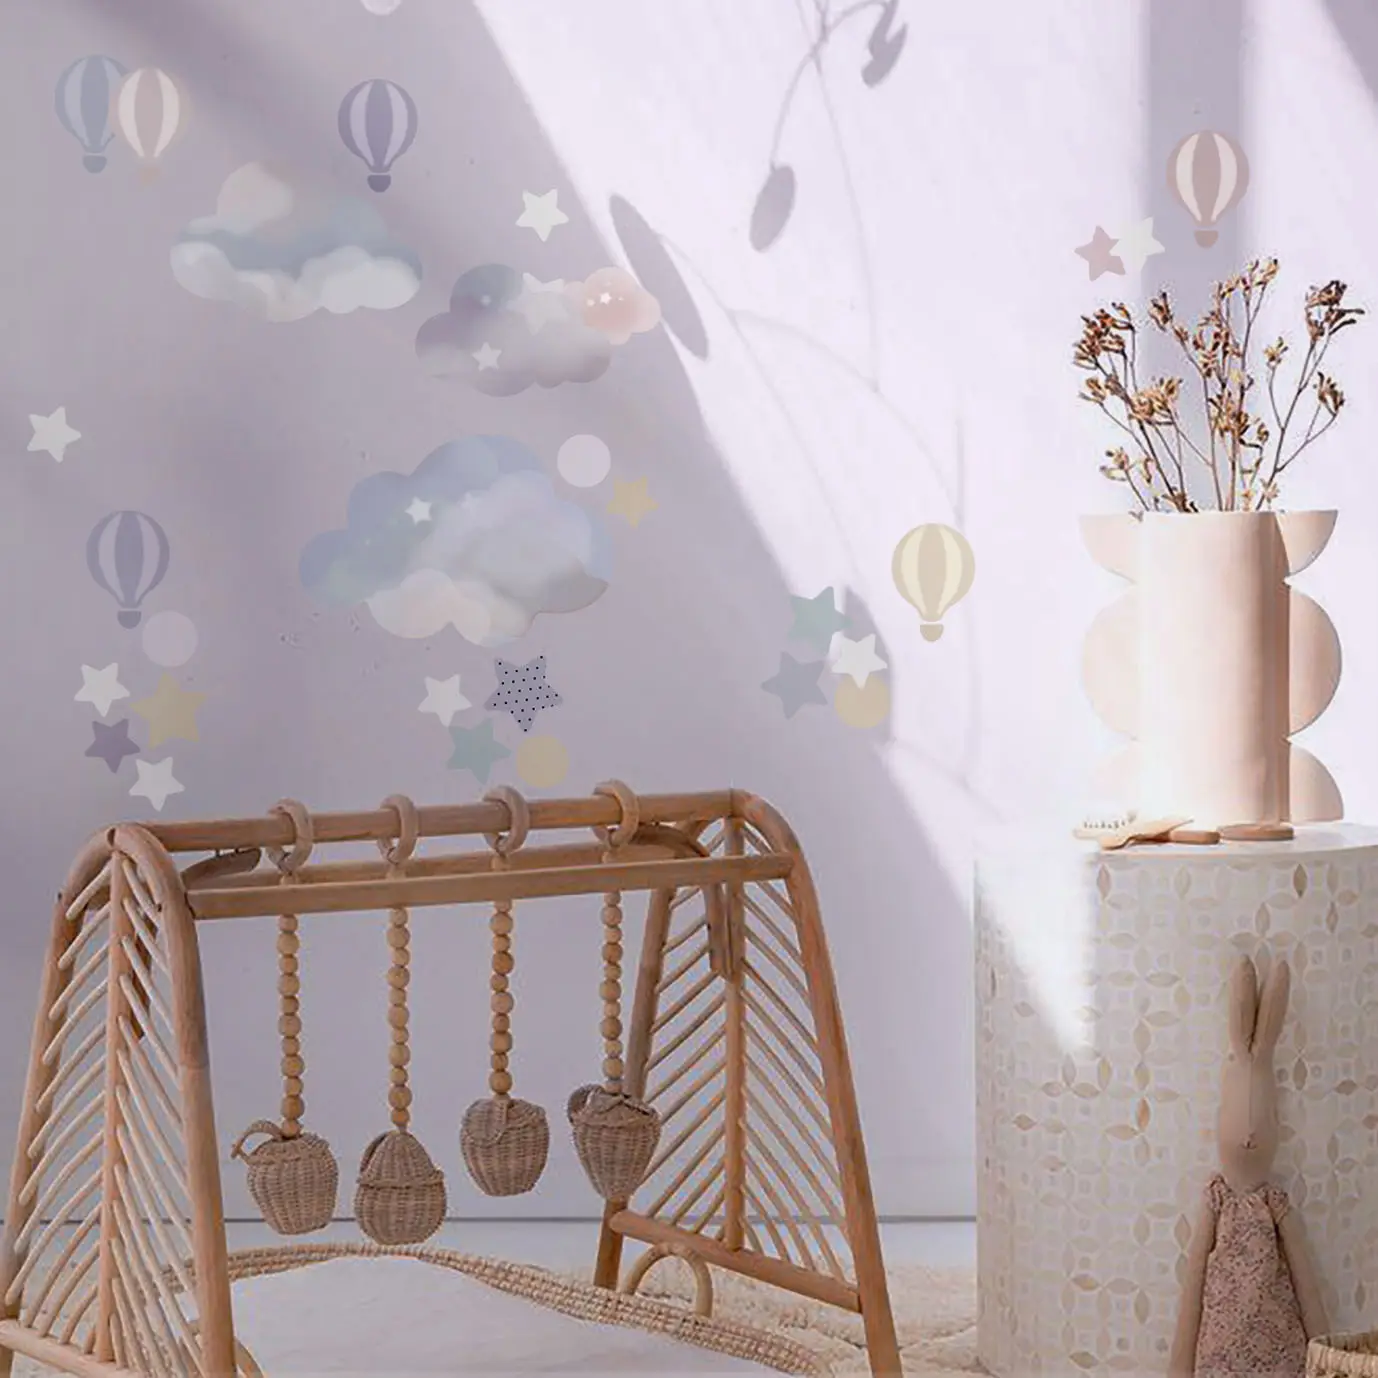 Stoff Selbst klebende feinkörnige Heißluft ballon Glänzende Aufkleber für Kinderzimmer Hintergrund dekoration